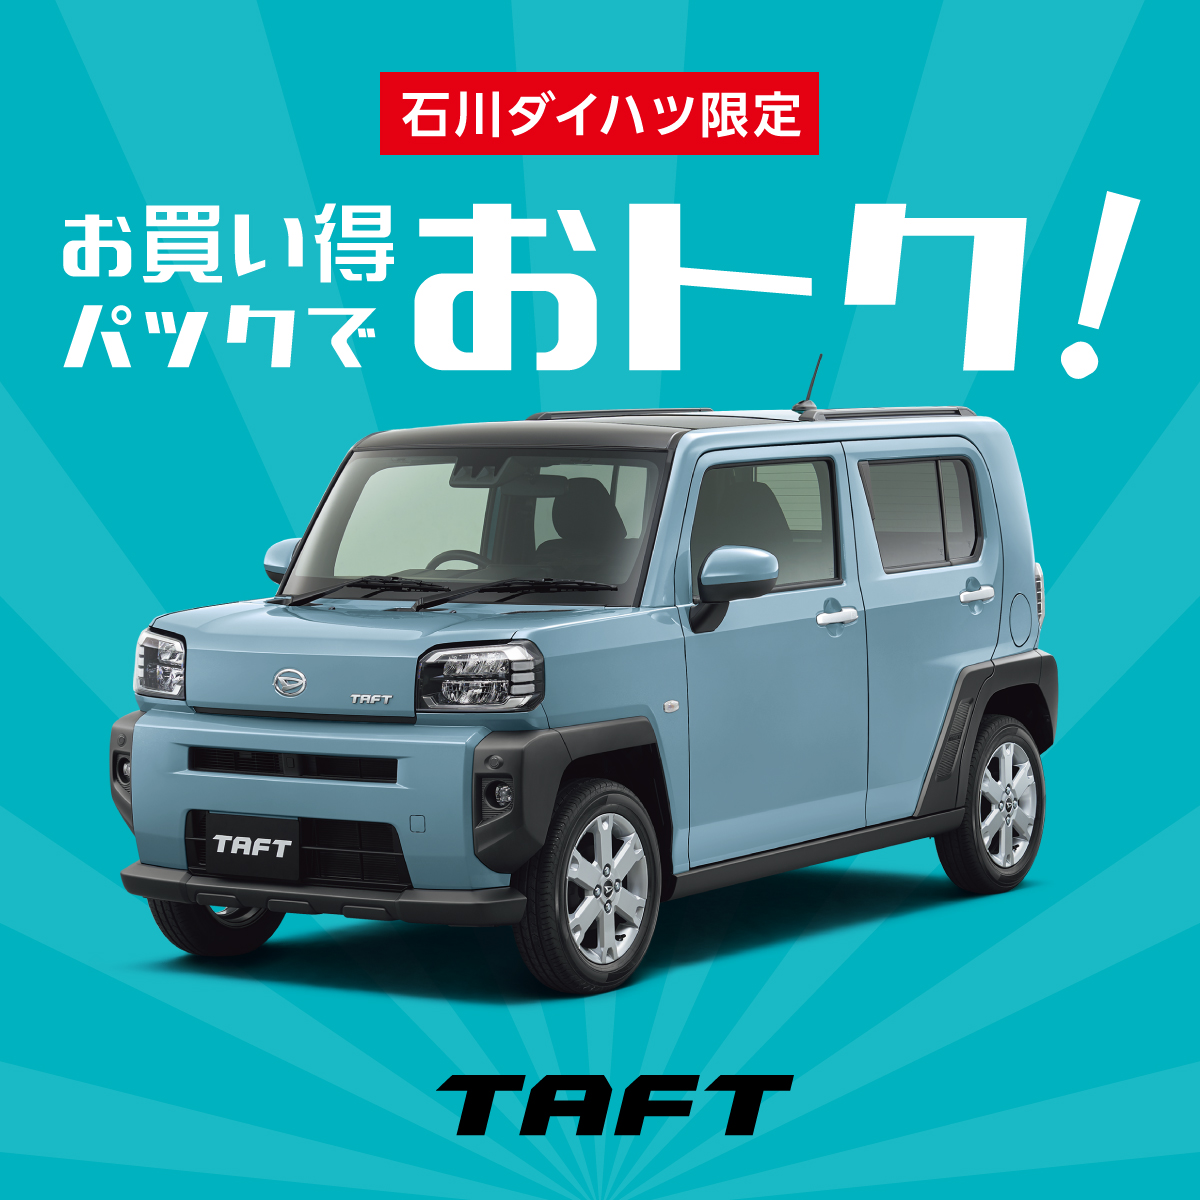 タフト Taft 新車 試乗車 公式 石川ダイハツ販売株式会社